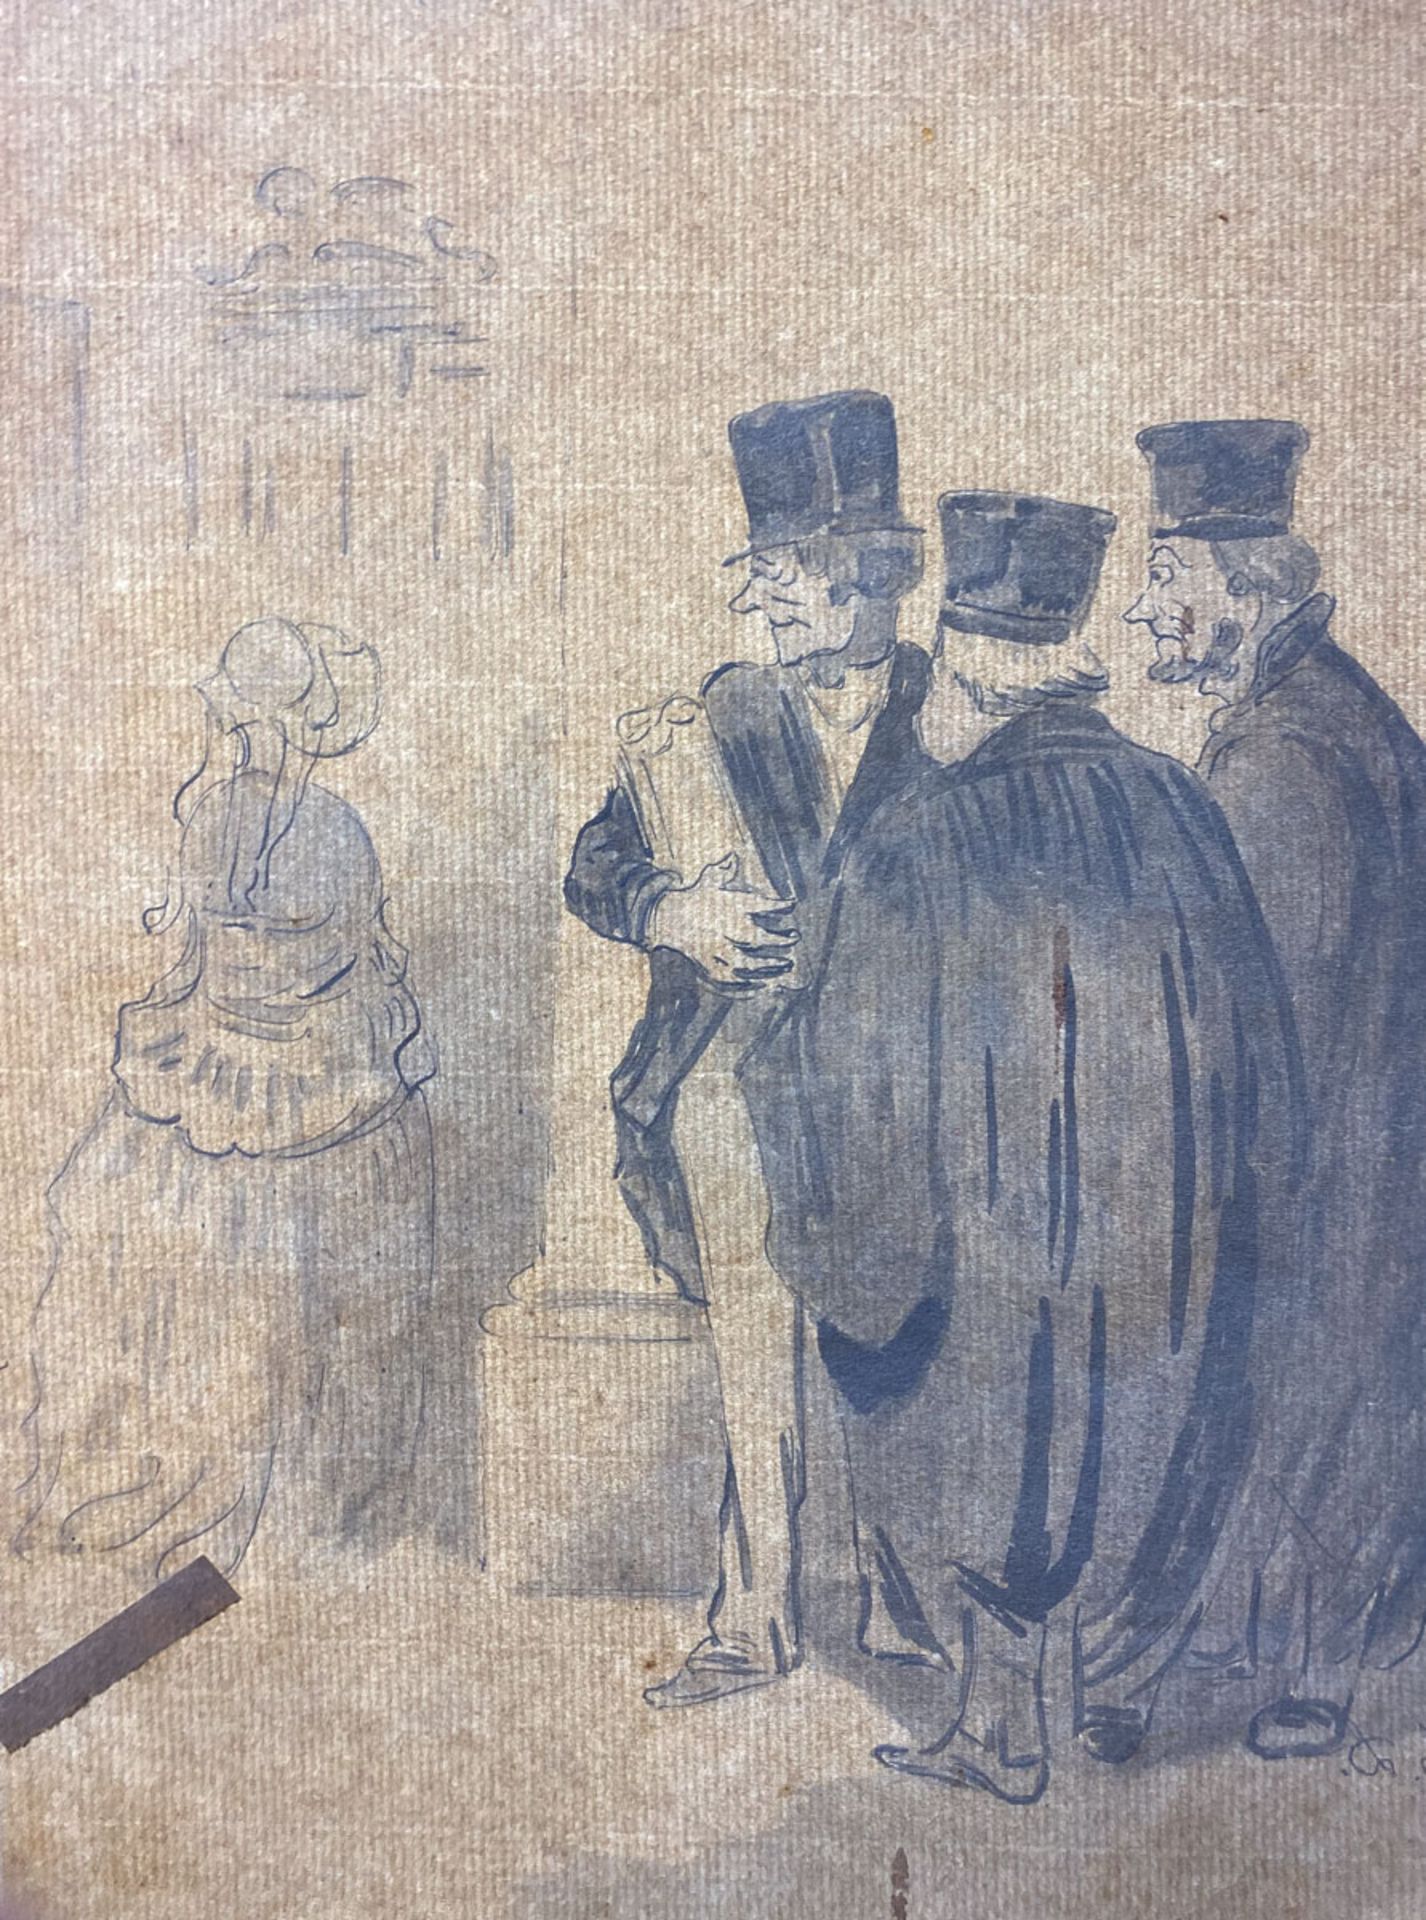 Daumier, Honoré (1808 - 1879), Drei Advokaten im Gespräch über eine Dame - Image 3 of 3